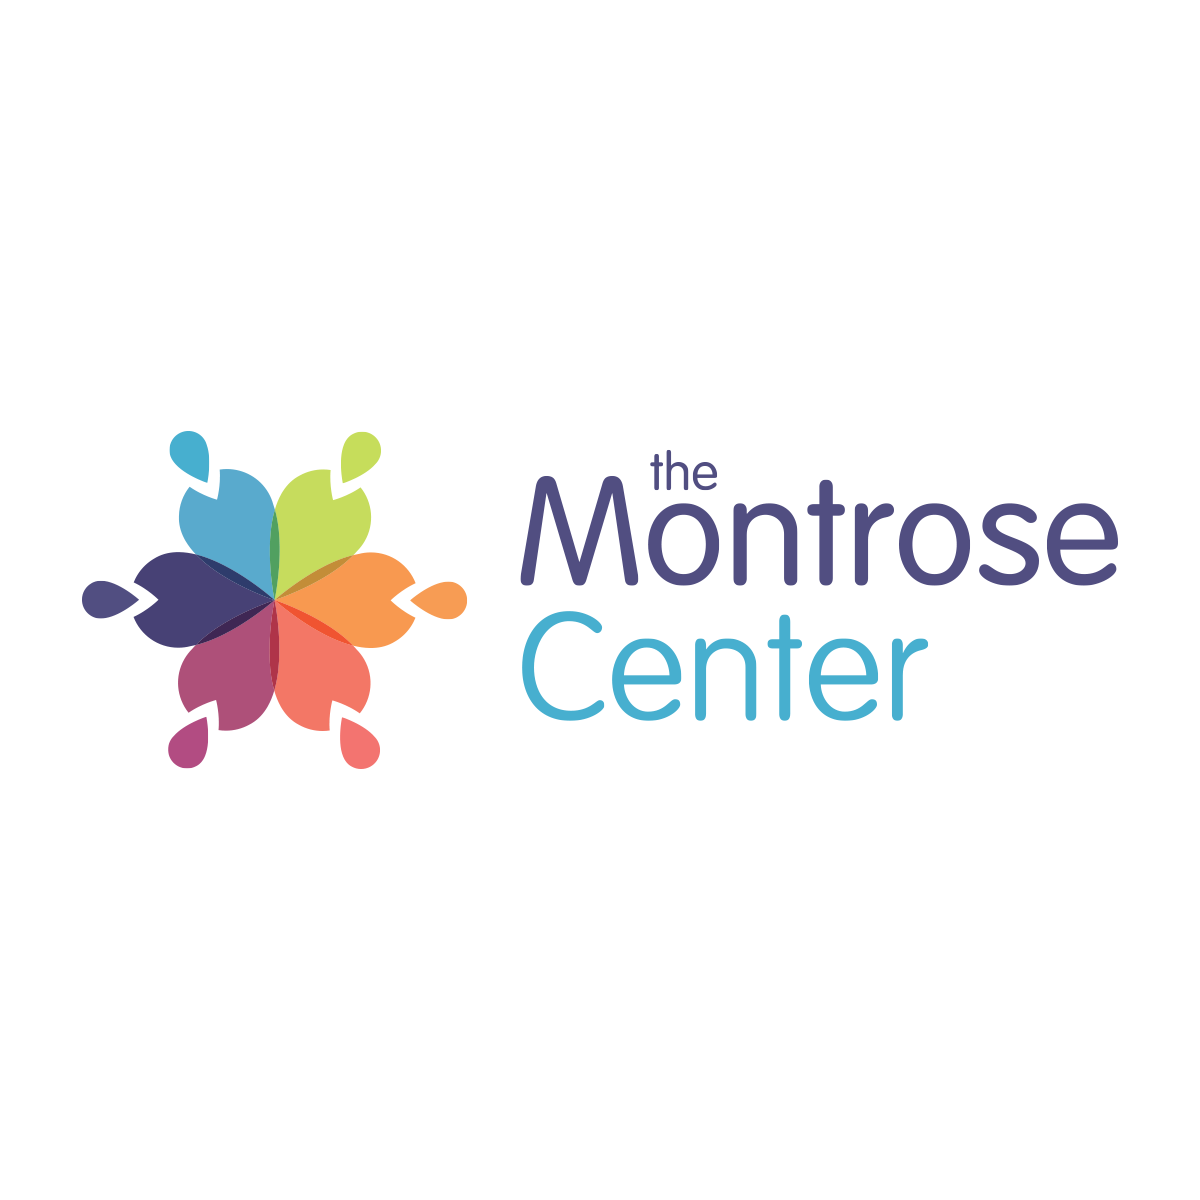 LGBTQ Organization in Dallas Texas - The Montrose Center